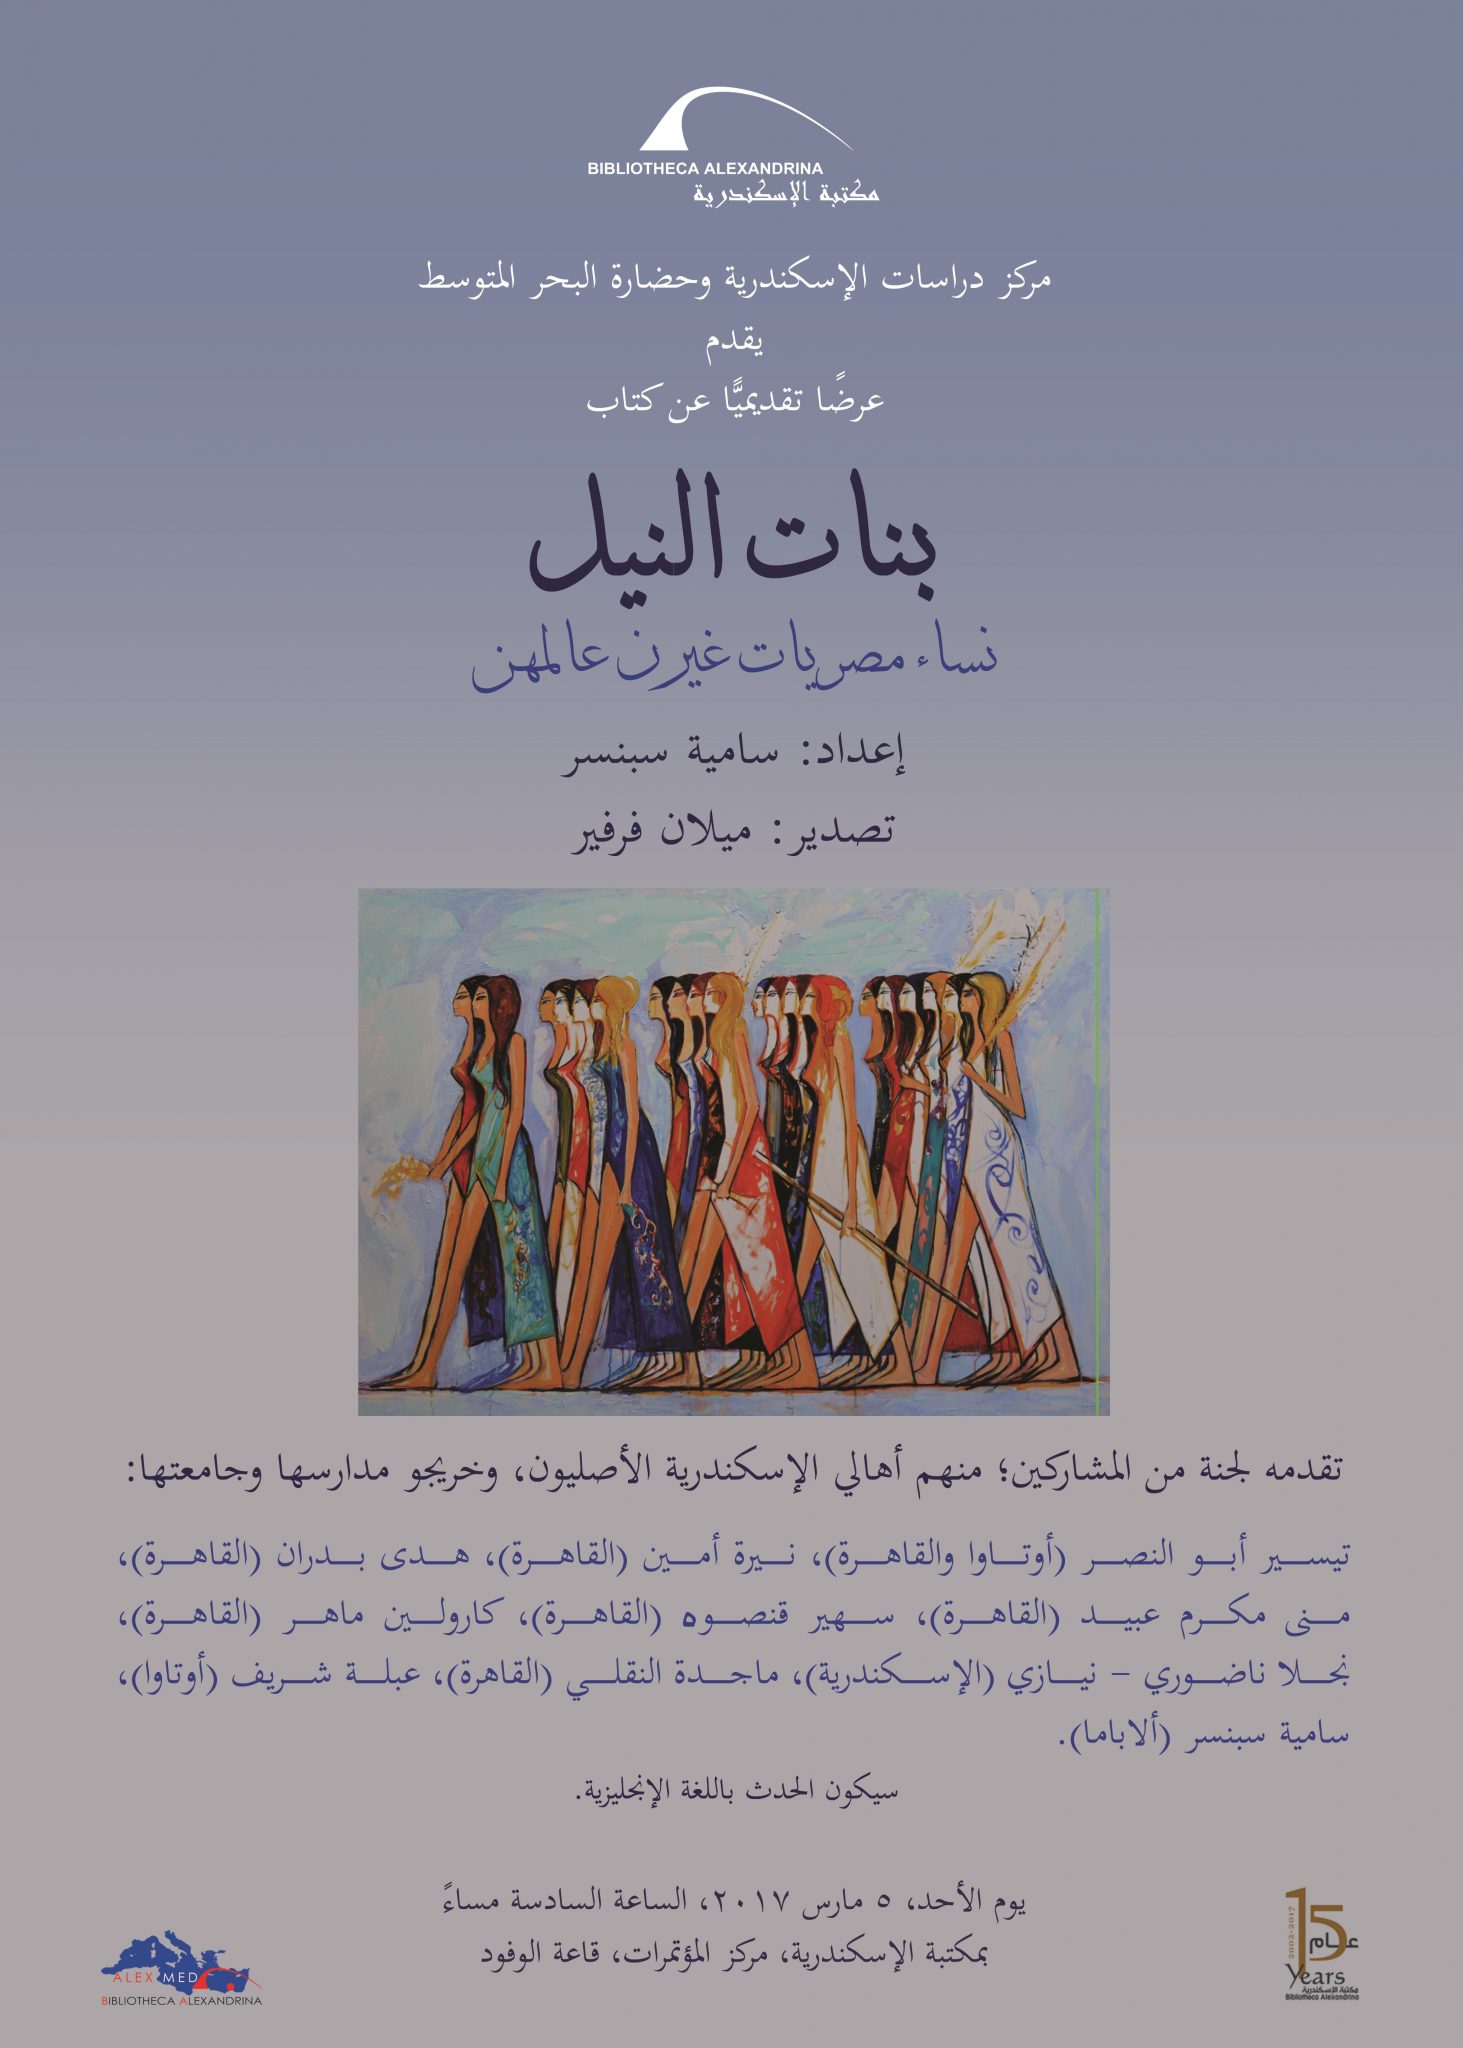   "بنات النيل" قصص نجاح 38 امرأة مصرية في إصدار لـ "كامبردج"